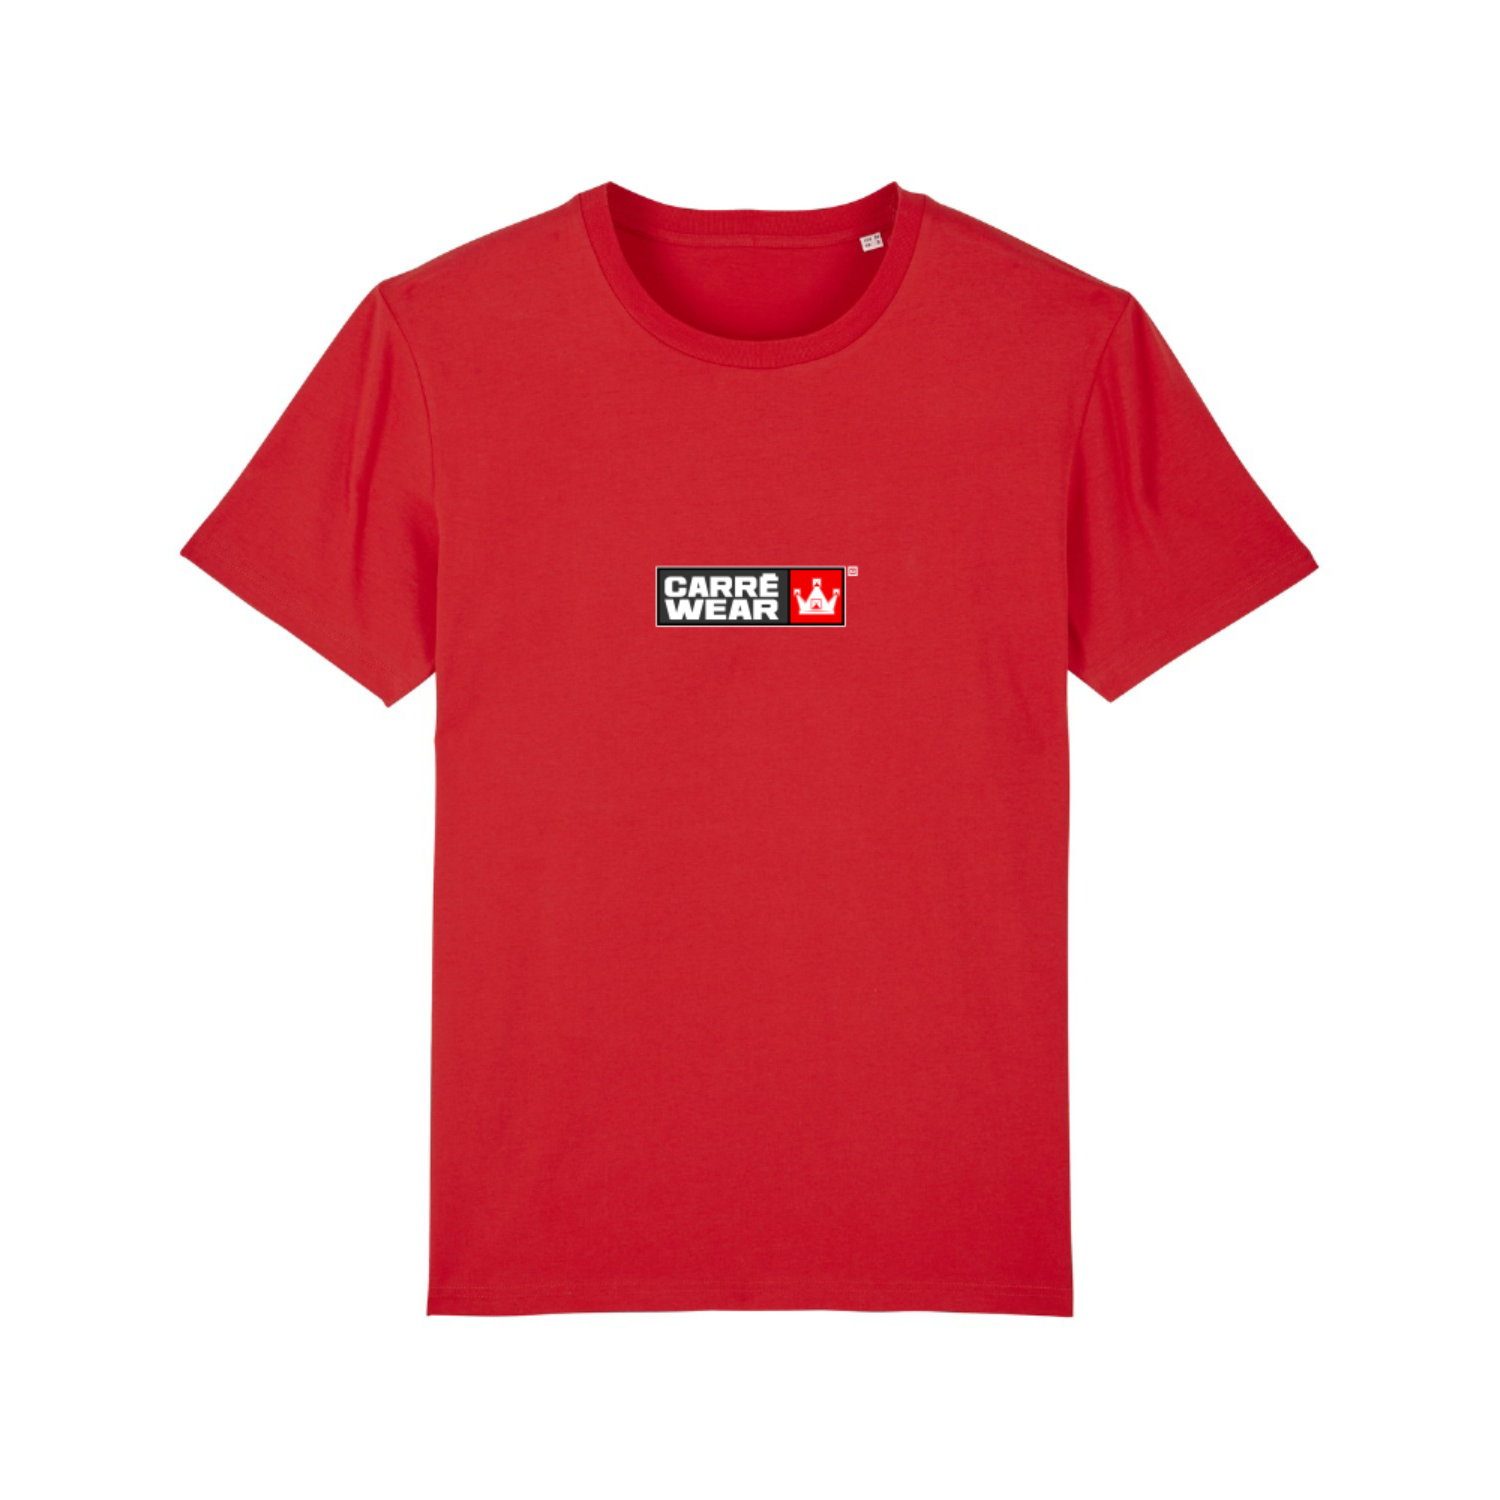 Tshirt - Carré wear – La Boutique de Greg Guillotin